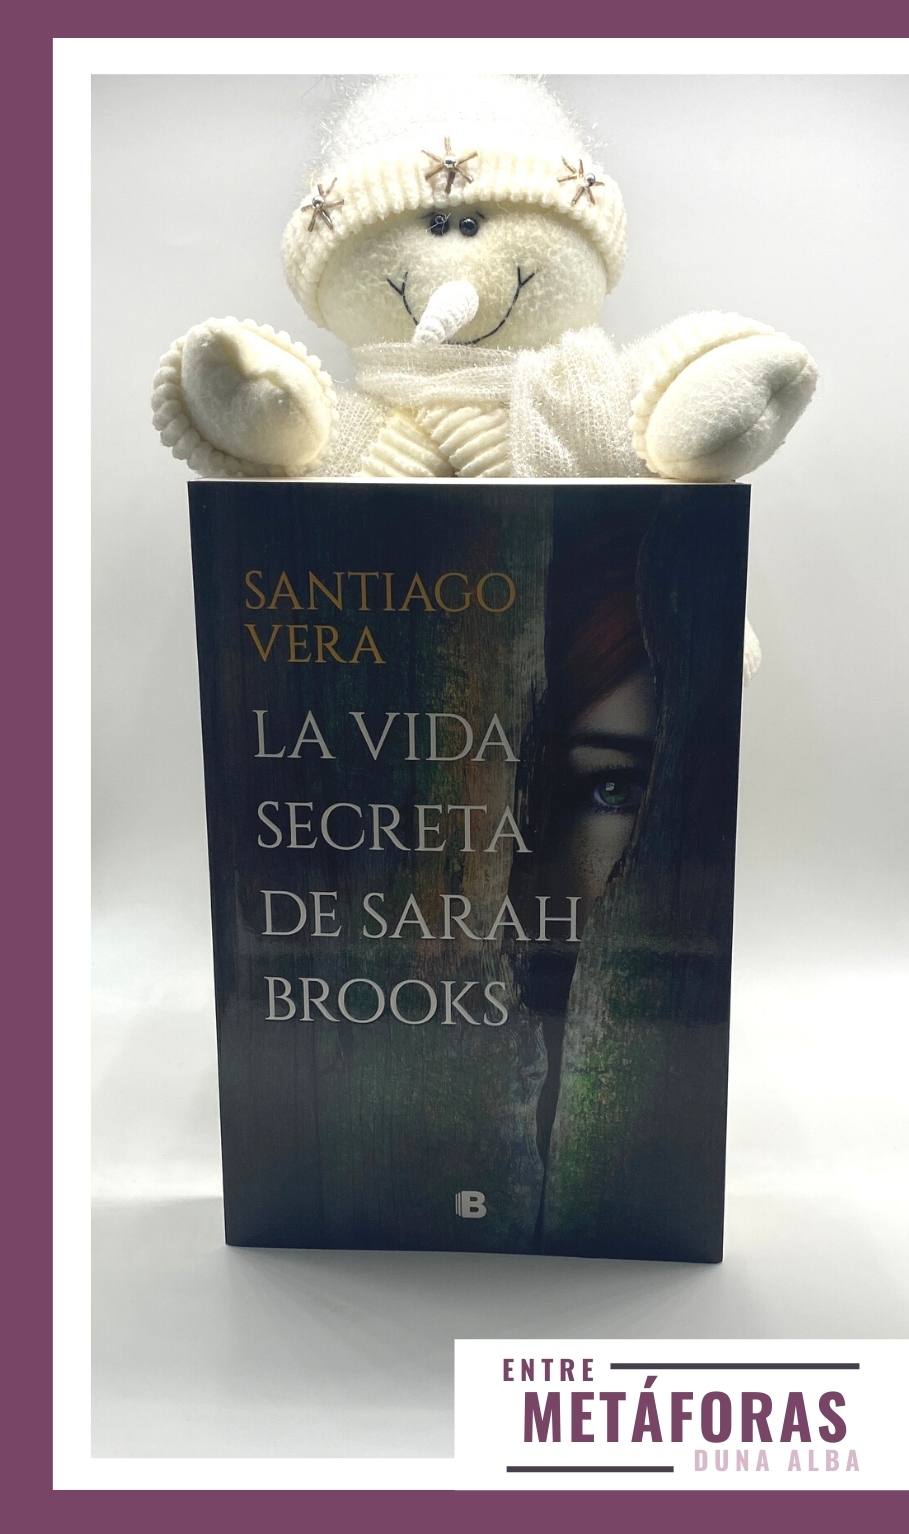 La vida secreta de Sarah Brooks, de Santiago Vera